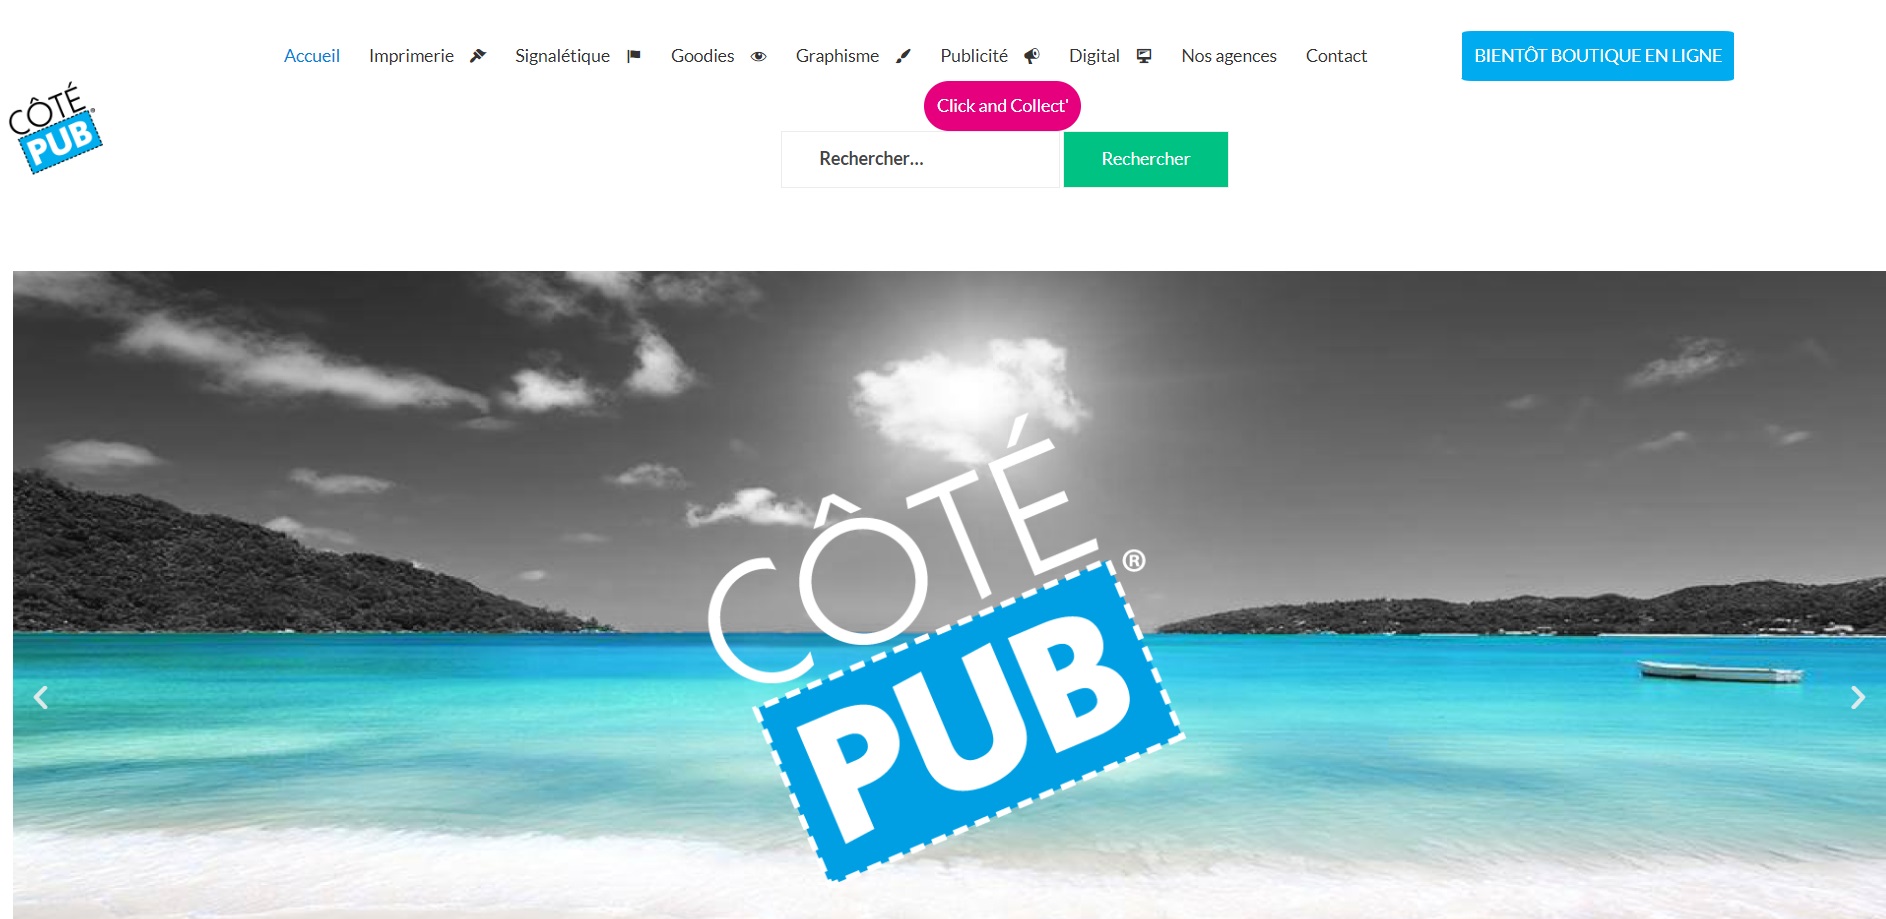  Coté Pub - Agence Web de Porto-Vecchio